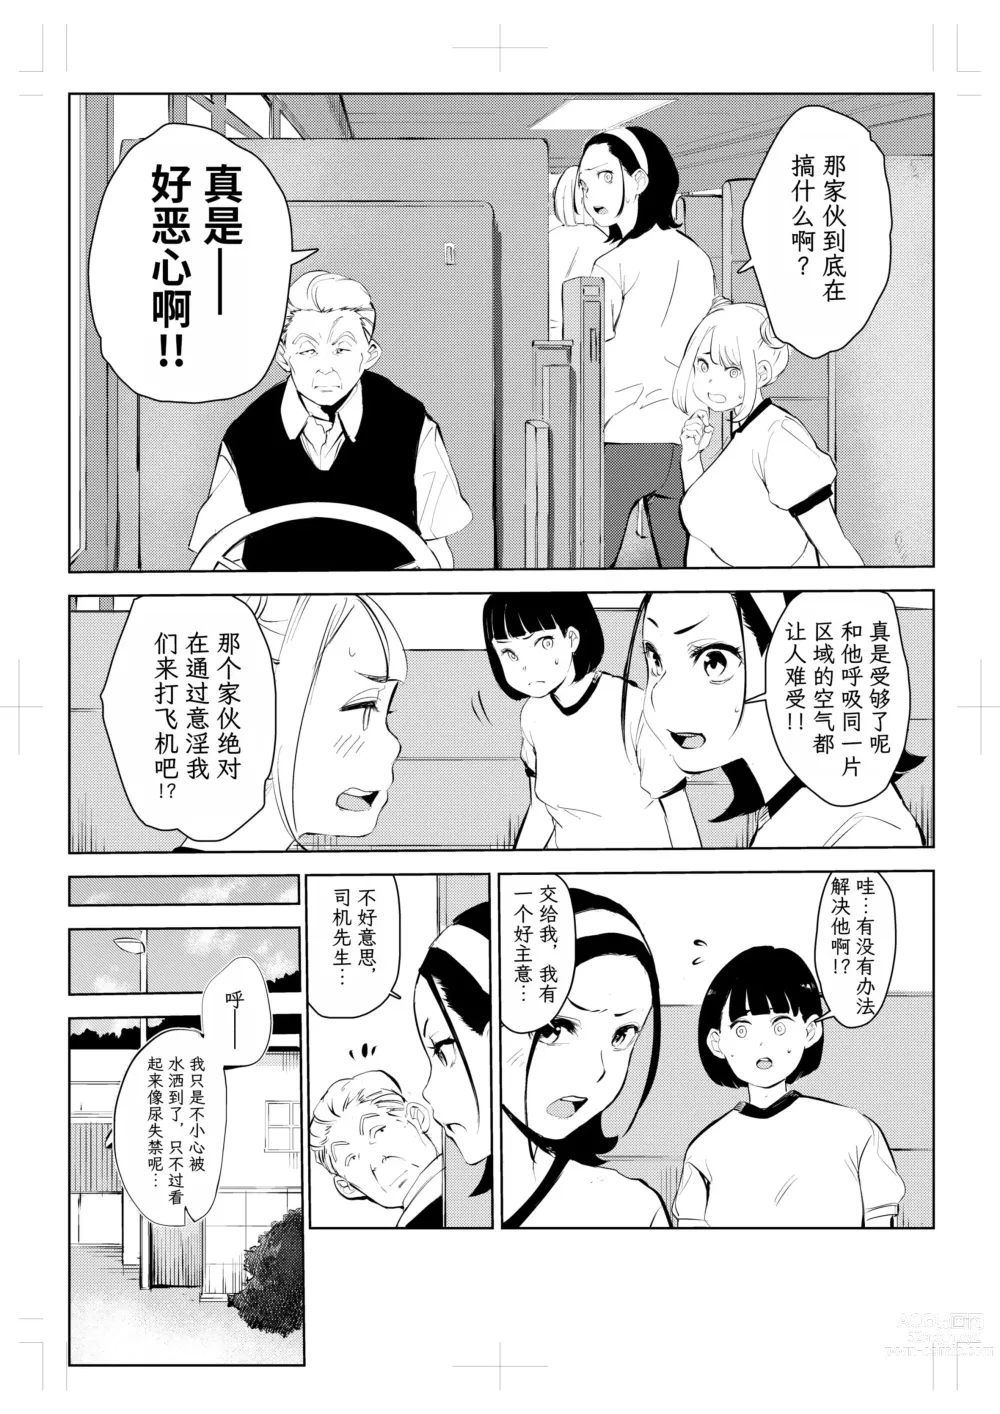 Page 13 of doujinshi 40-sai no Mahoutsukai 4